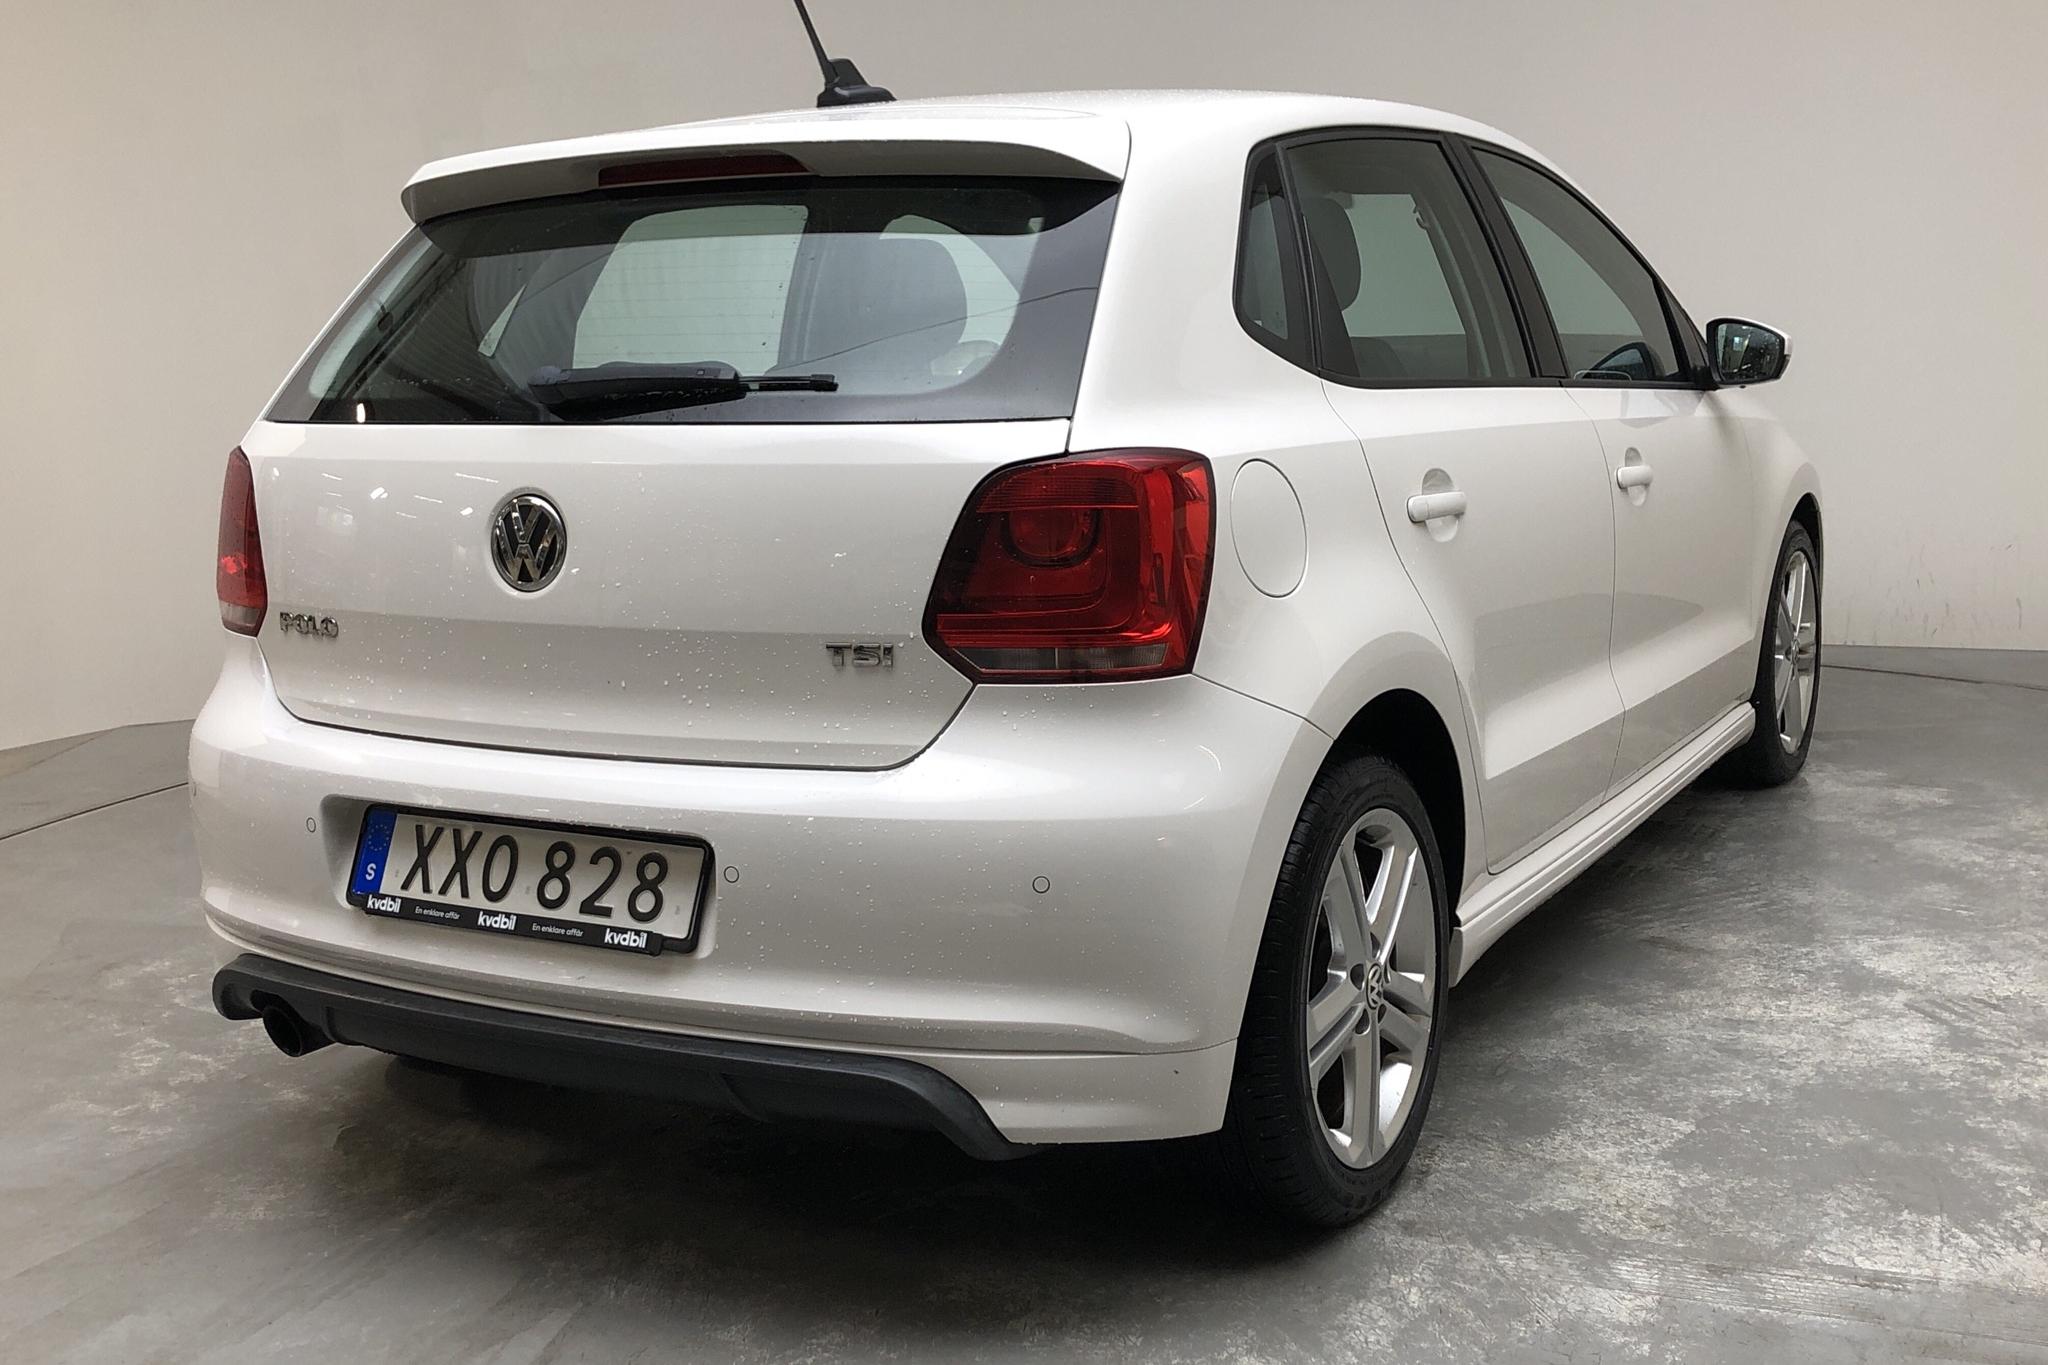 VW Polo 1.2 TSI 5dr (90hk) - 141 020 km - Manual - white - 2014